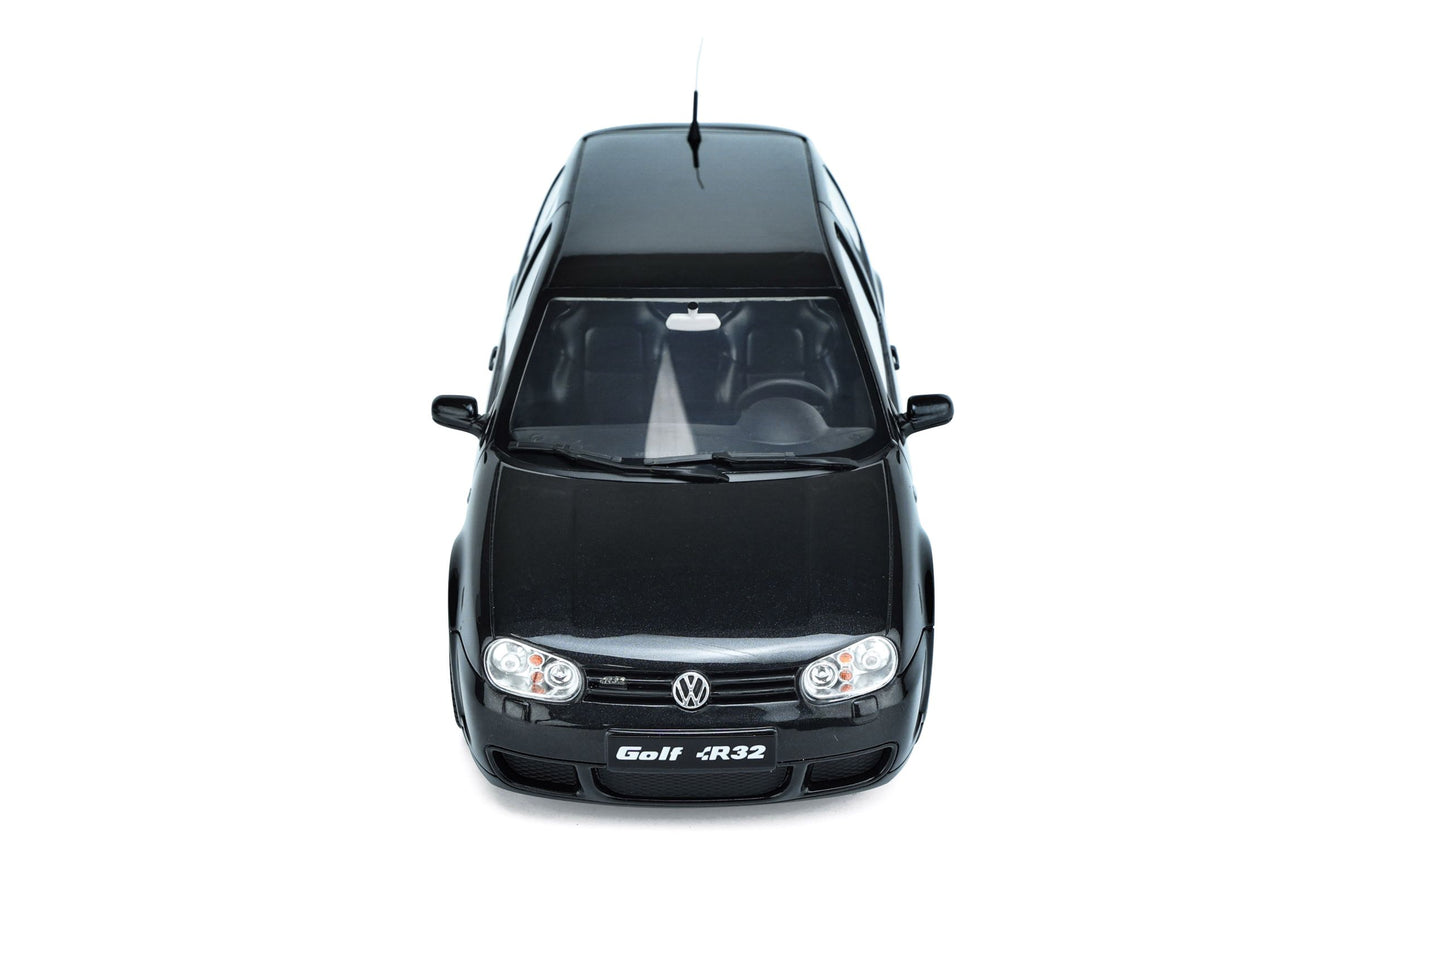 OttOmobile - Volkswagen Golf R32 (MKIV) (Black Magic Pearl) 1:18 Scale Model Car